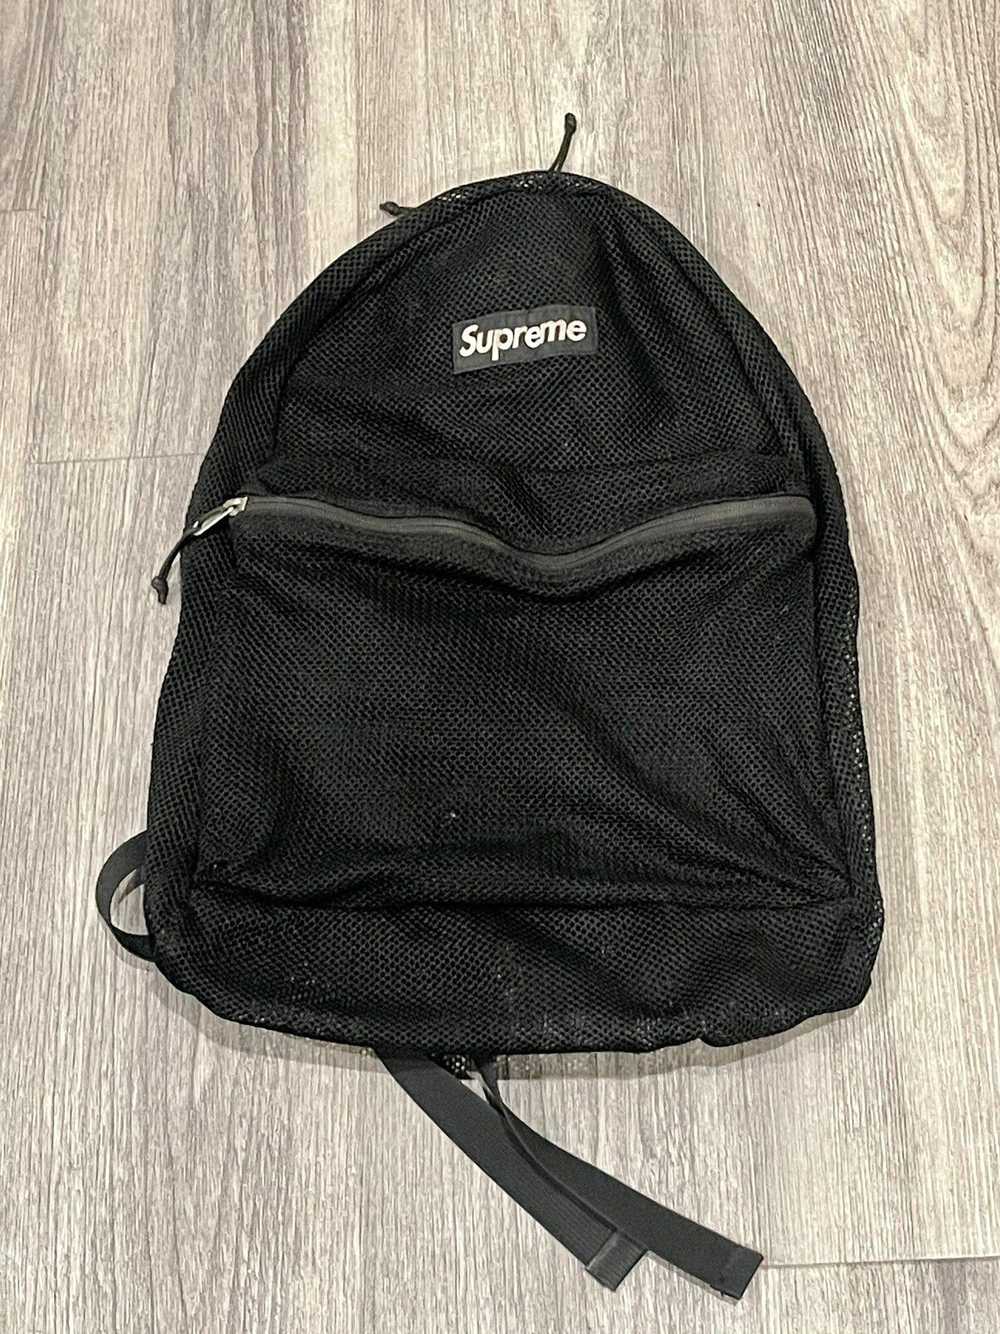 Supreme Supreme Mesh Backpack - image 4